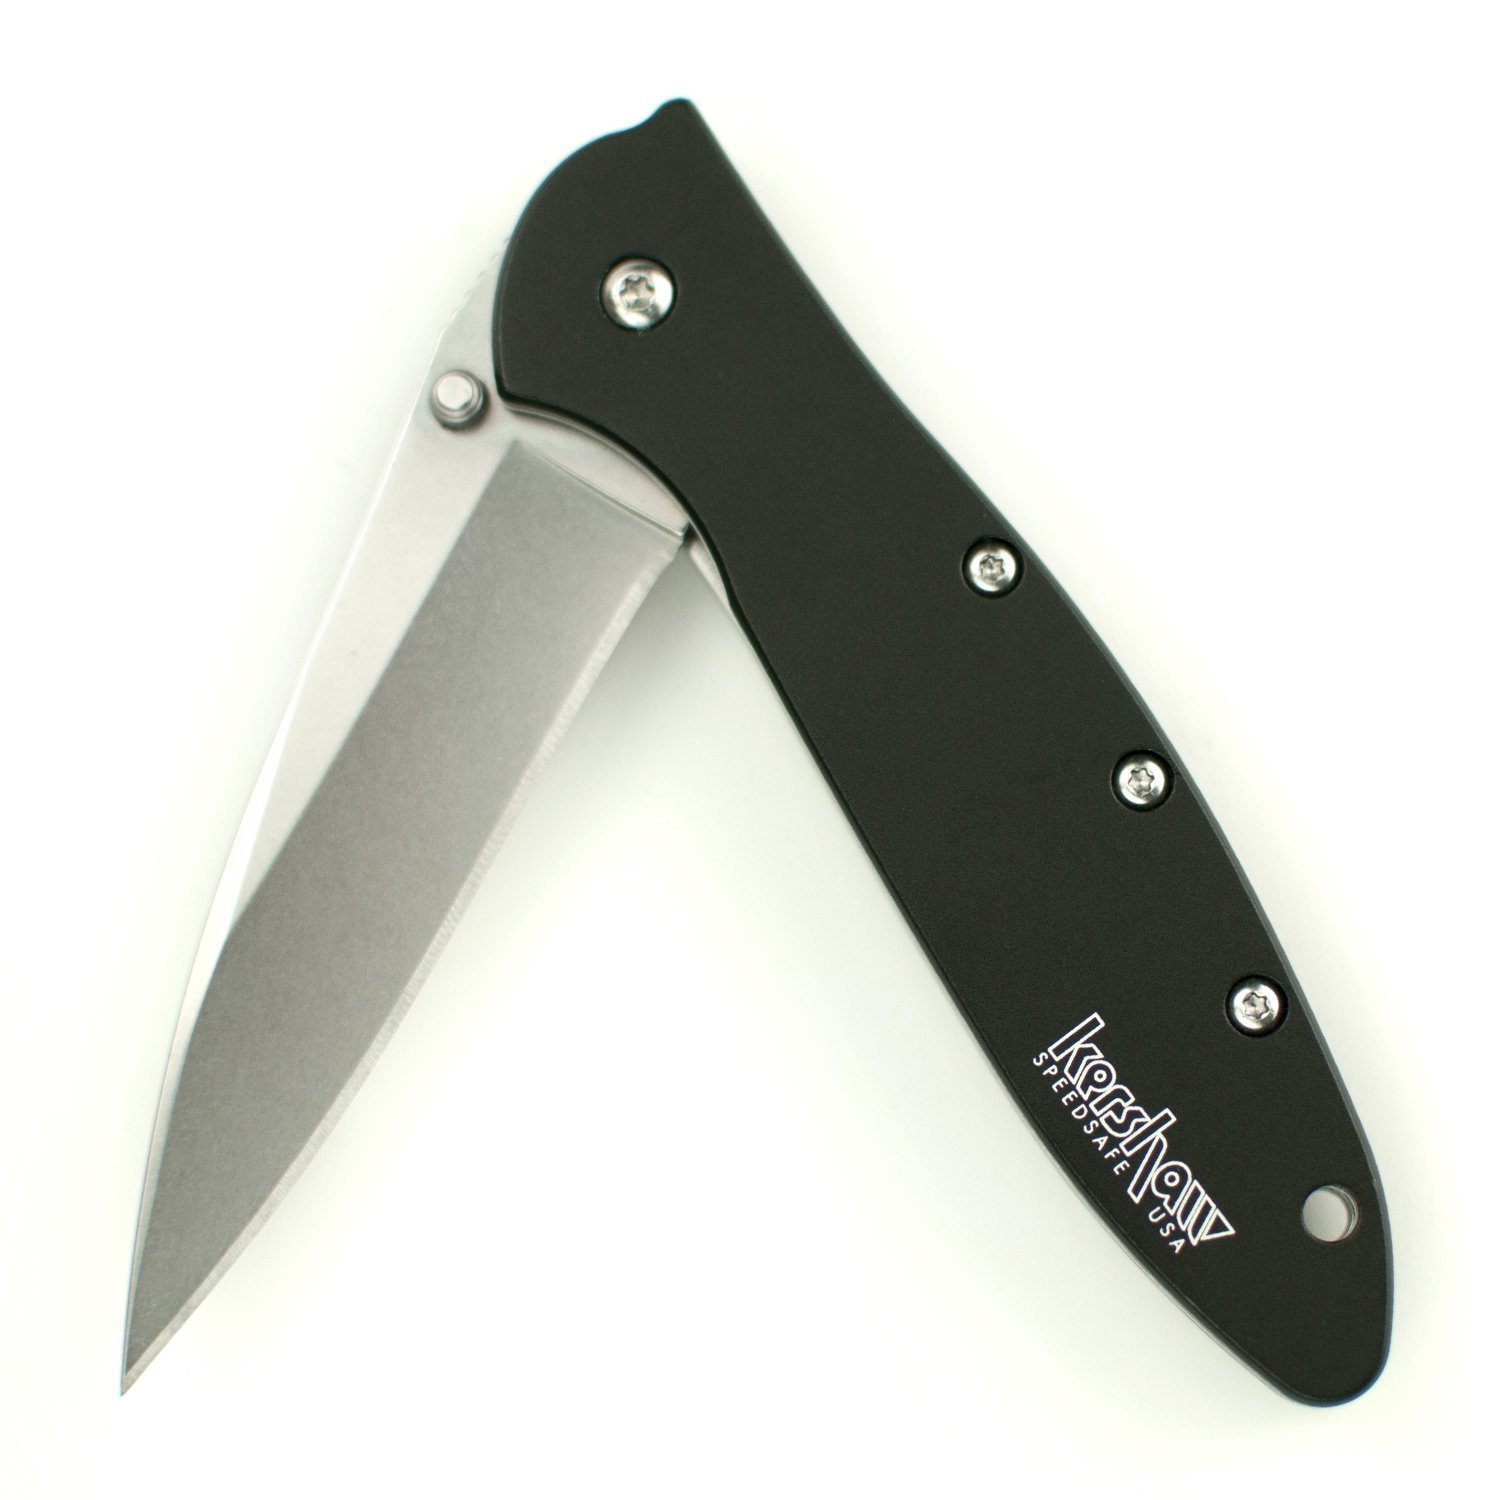 Kershaw 1660SWBLK Leek Folding Knife Review